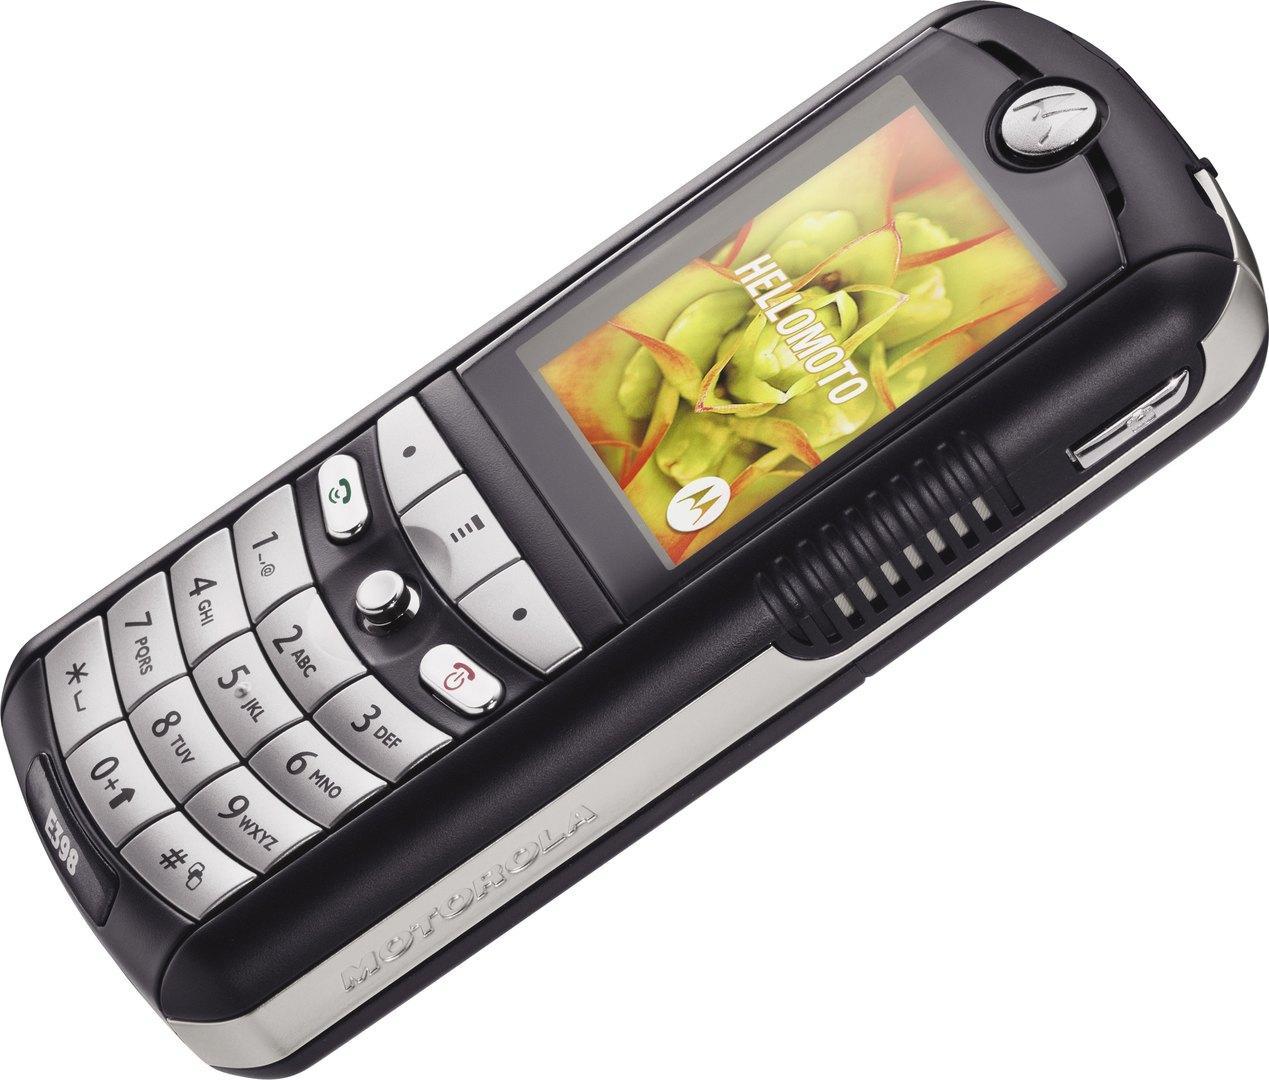 14 legendary phones of the early 2000s - Mobile phones, Siemens, Nokia, Sony ericsson, Samsung, Nostalgia, Longpost